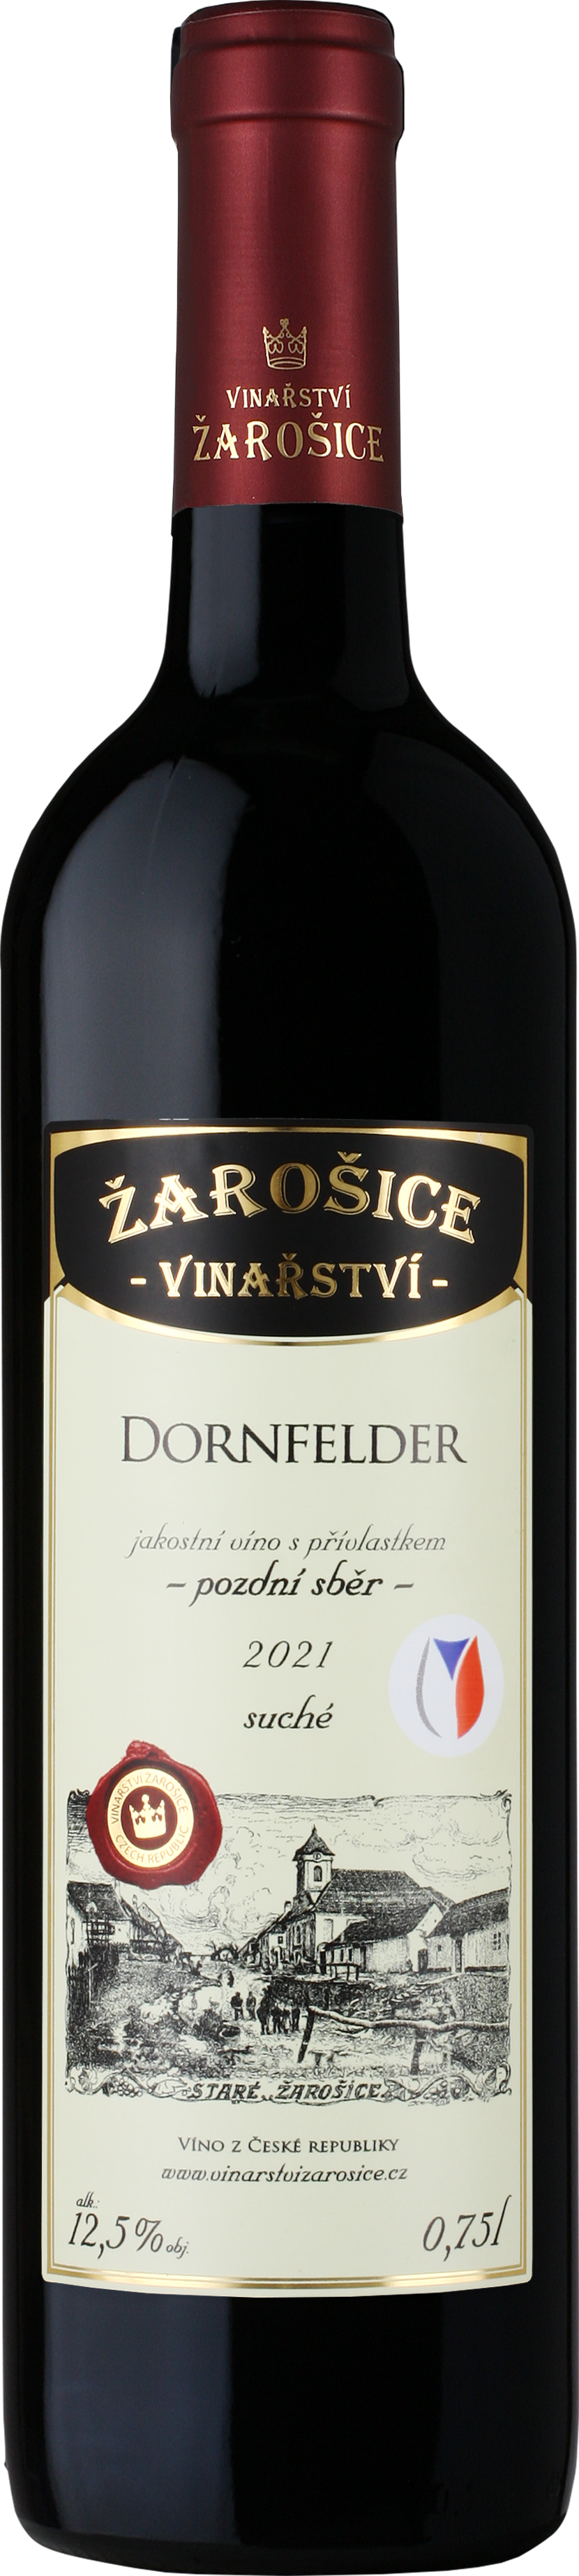 Dornfelder 2021, pozdní sběr, Vinařství Zarošice